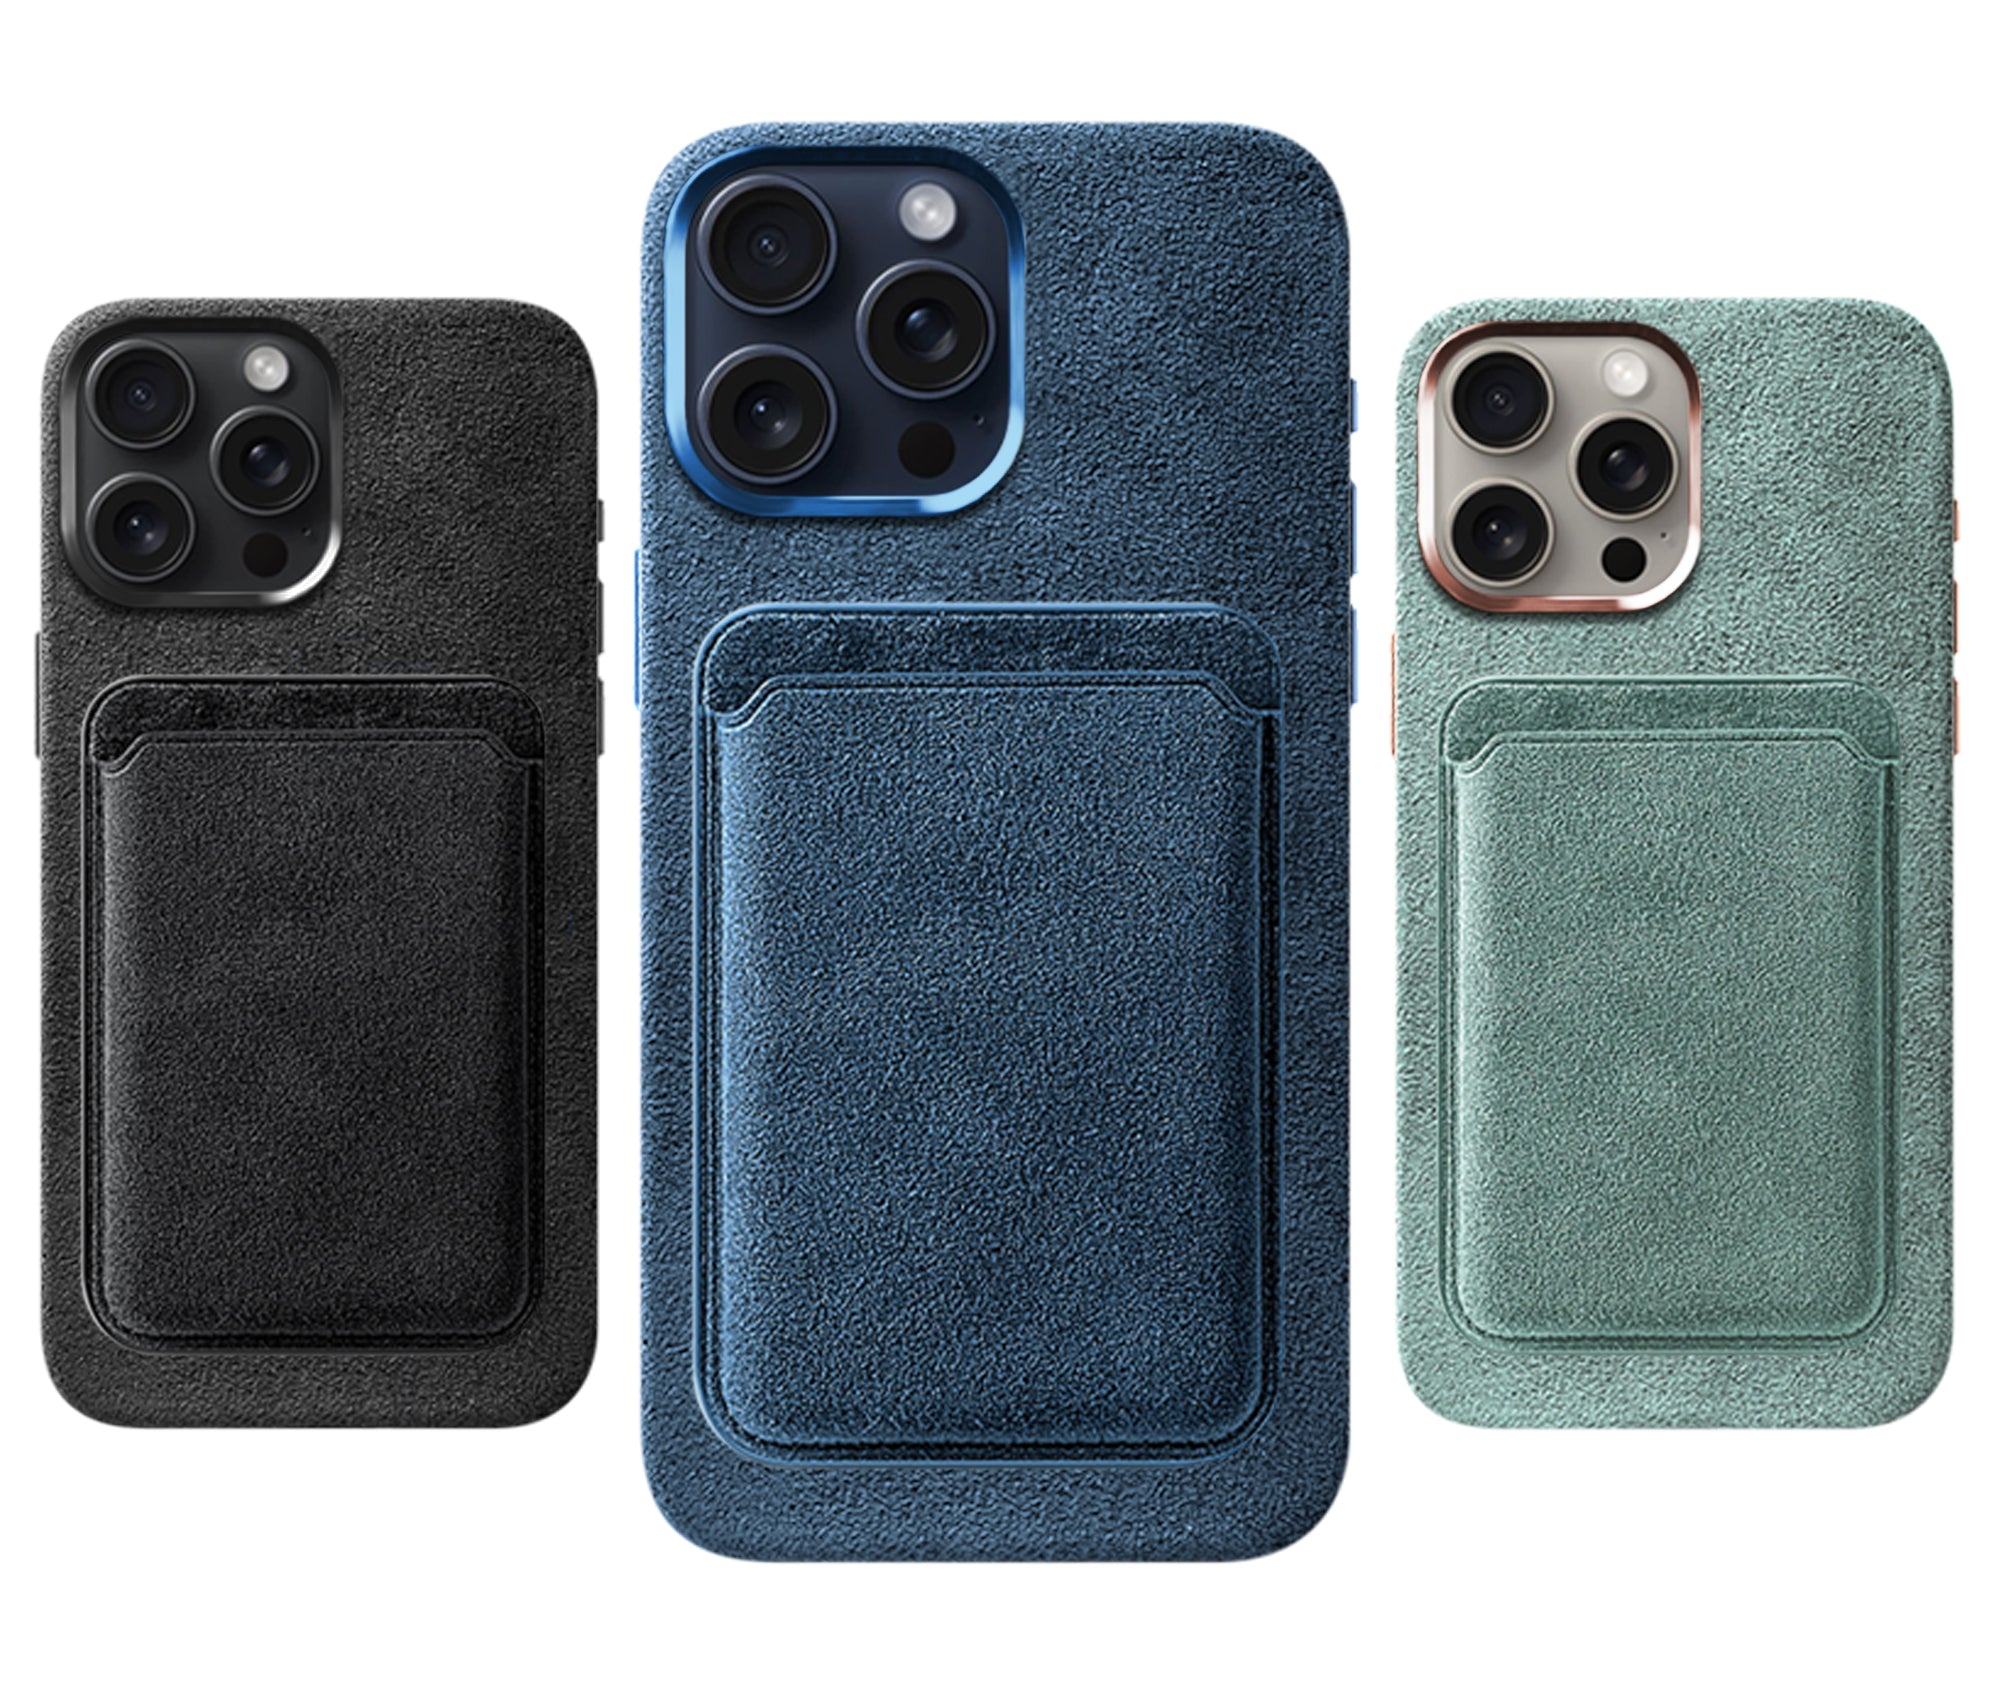 Komodoty Alcantara MagSafe Wallet Black Ocean Blue Mint Installed iPhone Together Desktop Image